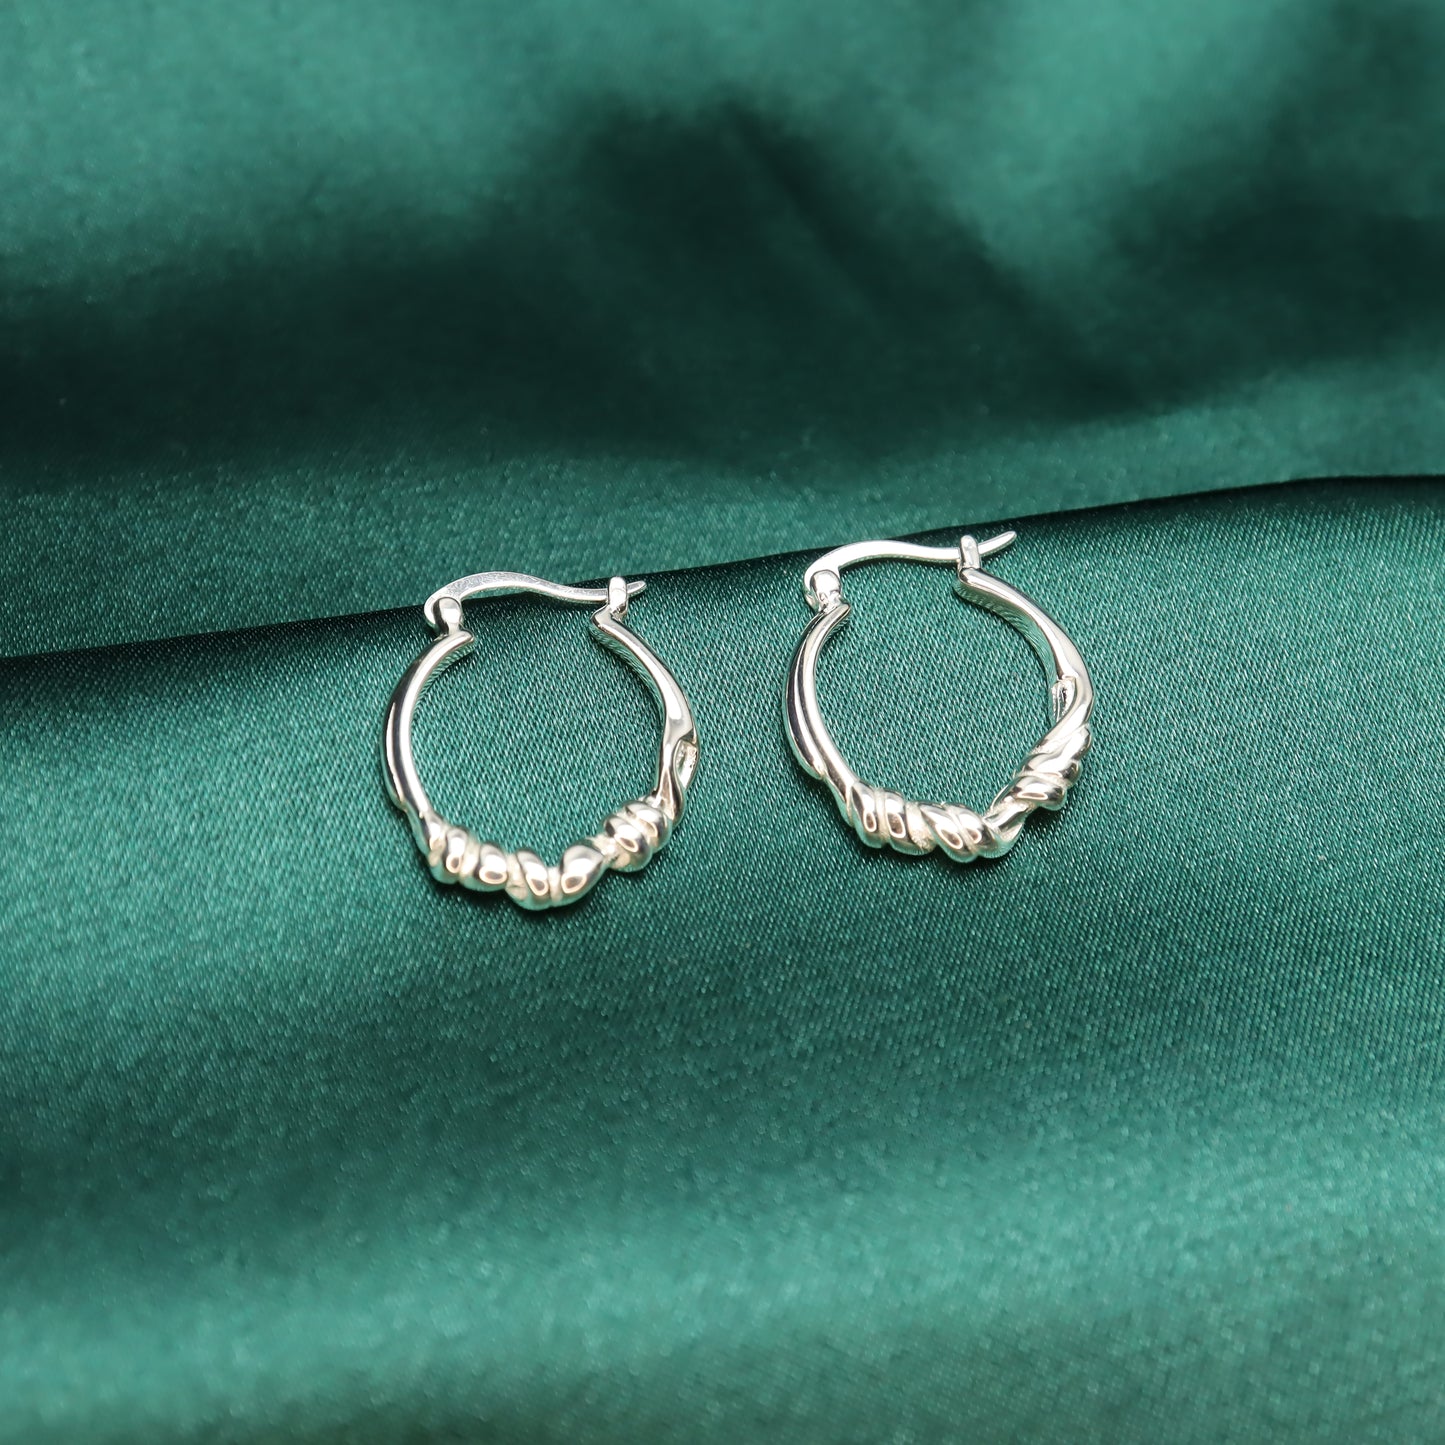 Rope Of Love - Elegant S925 Sterling Silver Hoop Earrings